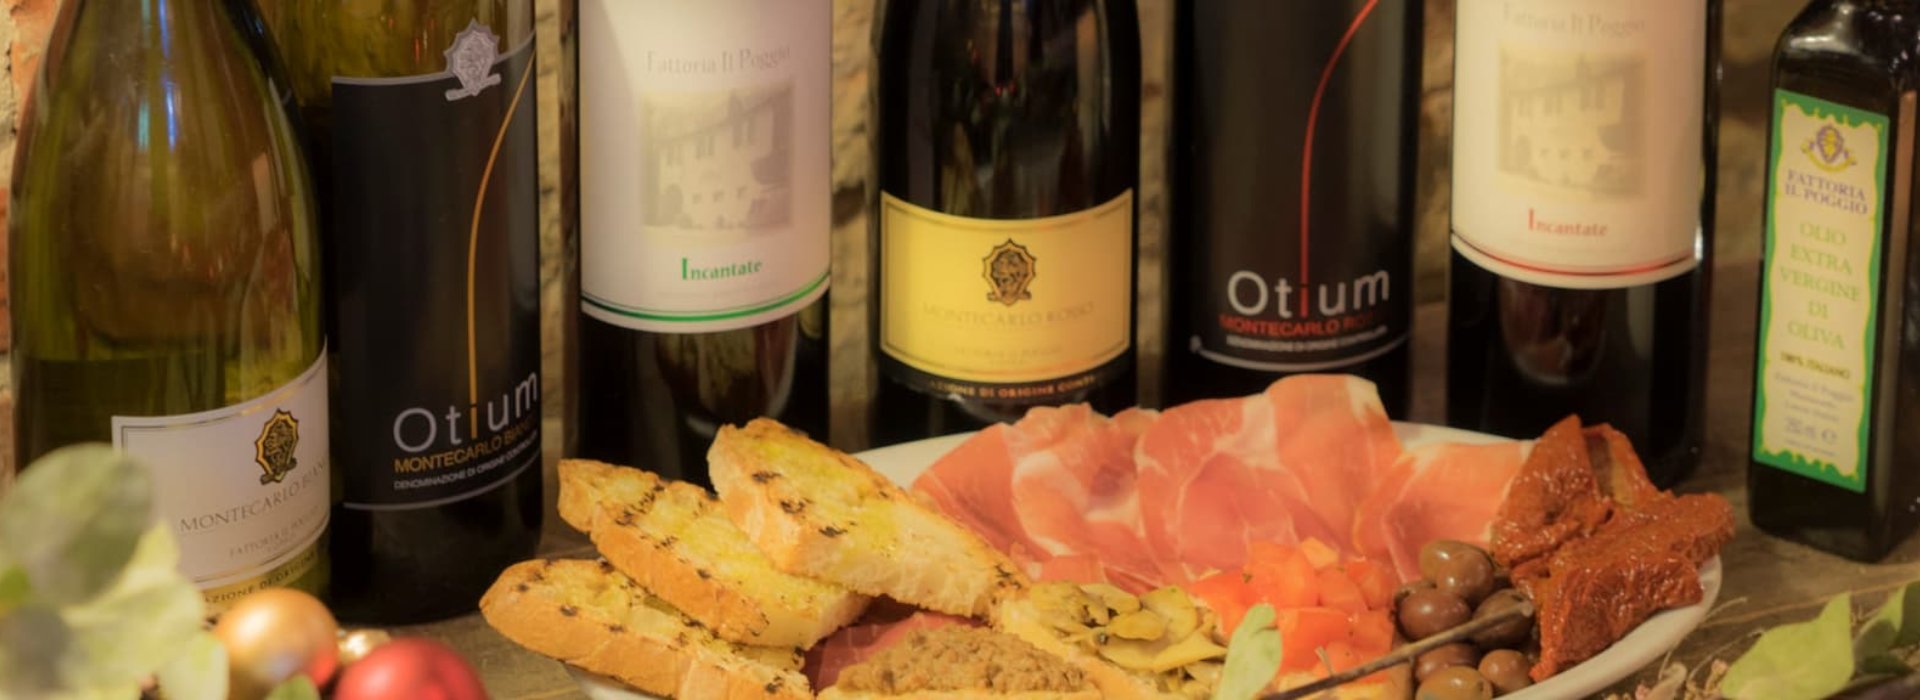 Degustazione di vino toscano e tagliere di salumi in Toscana a Montecatini Terme